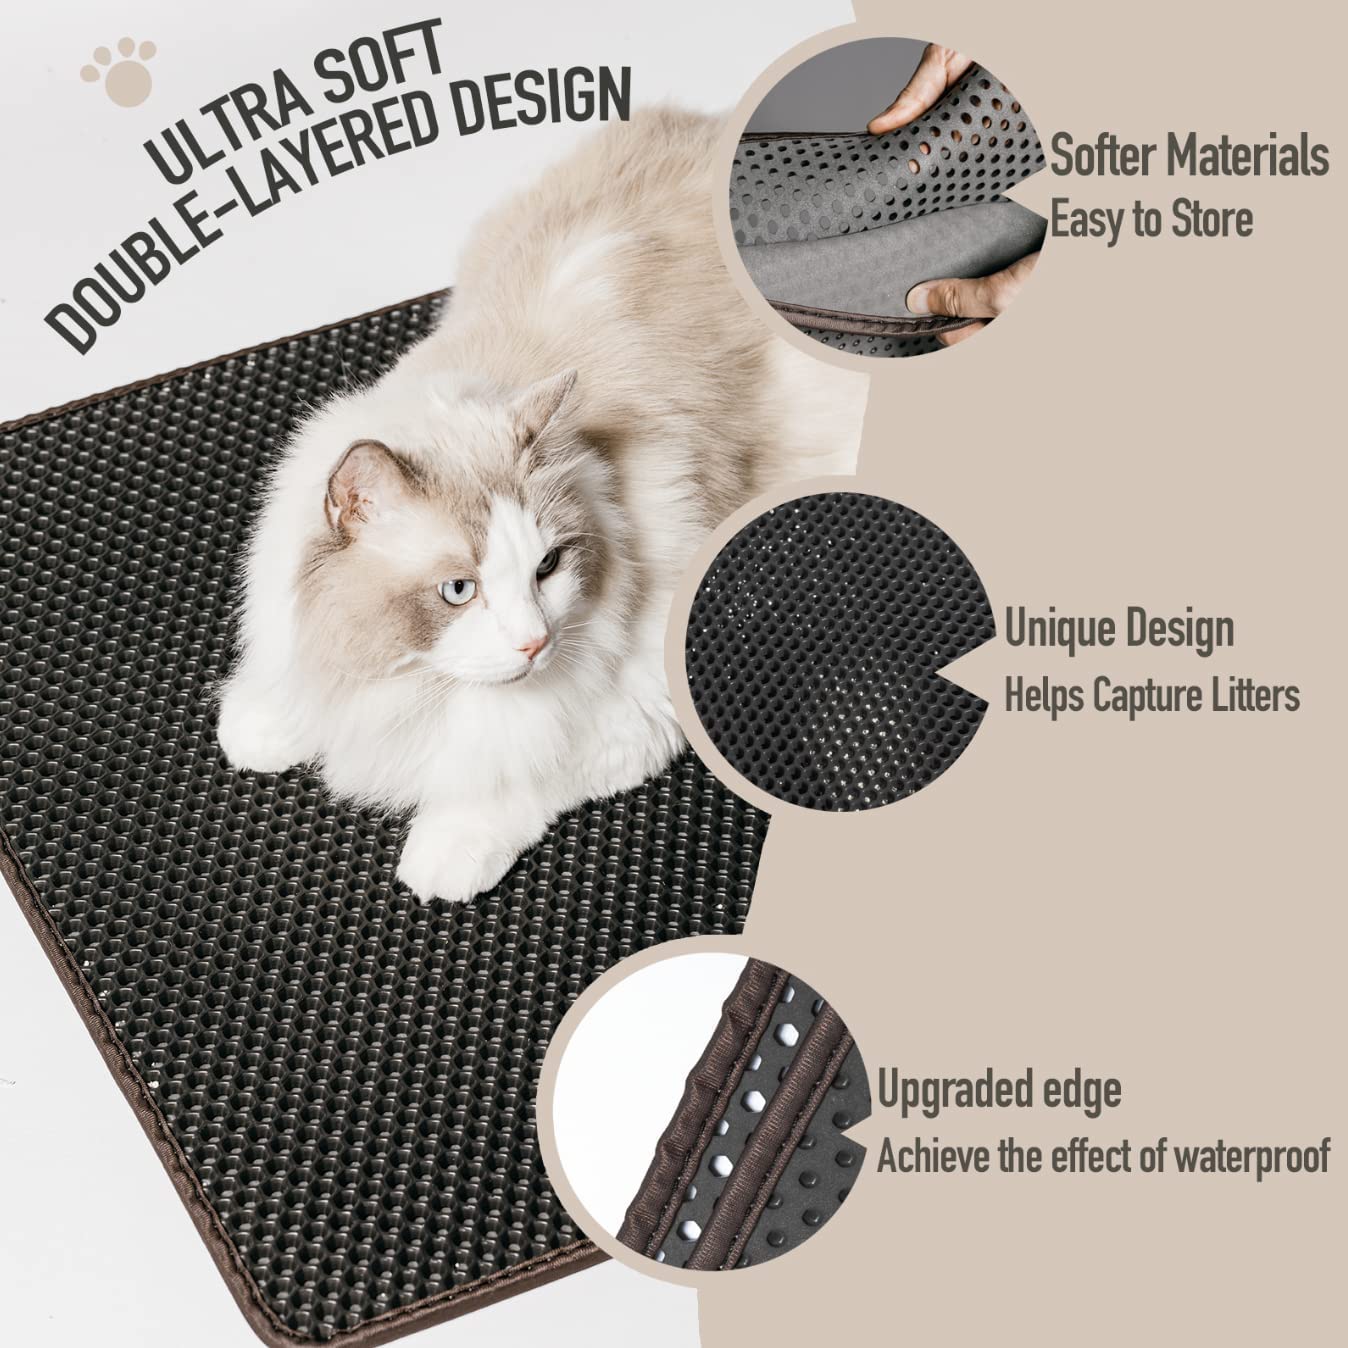 Double Layer Cat Litter Mat ( 21" x 14" )